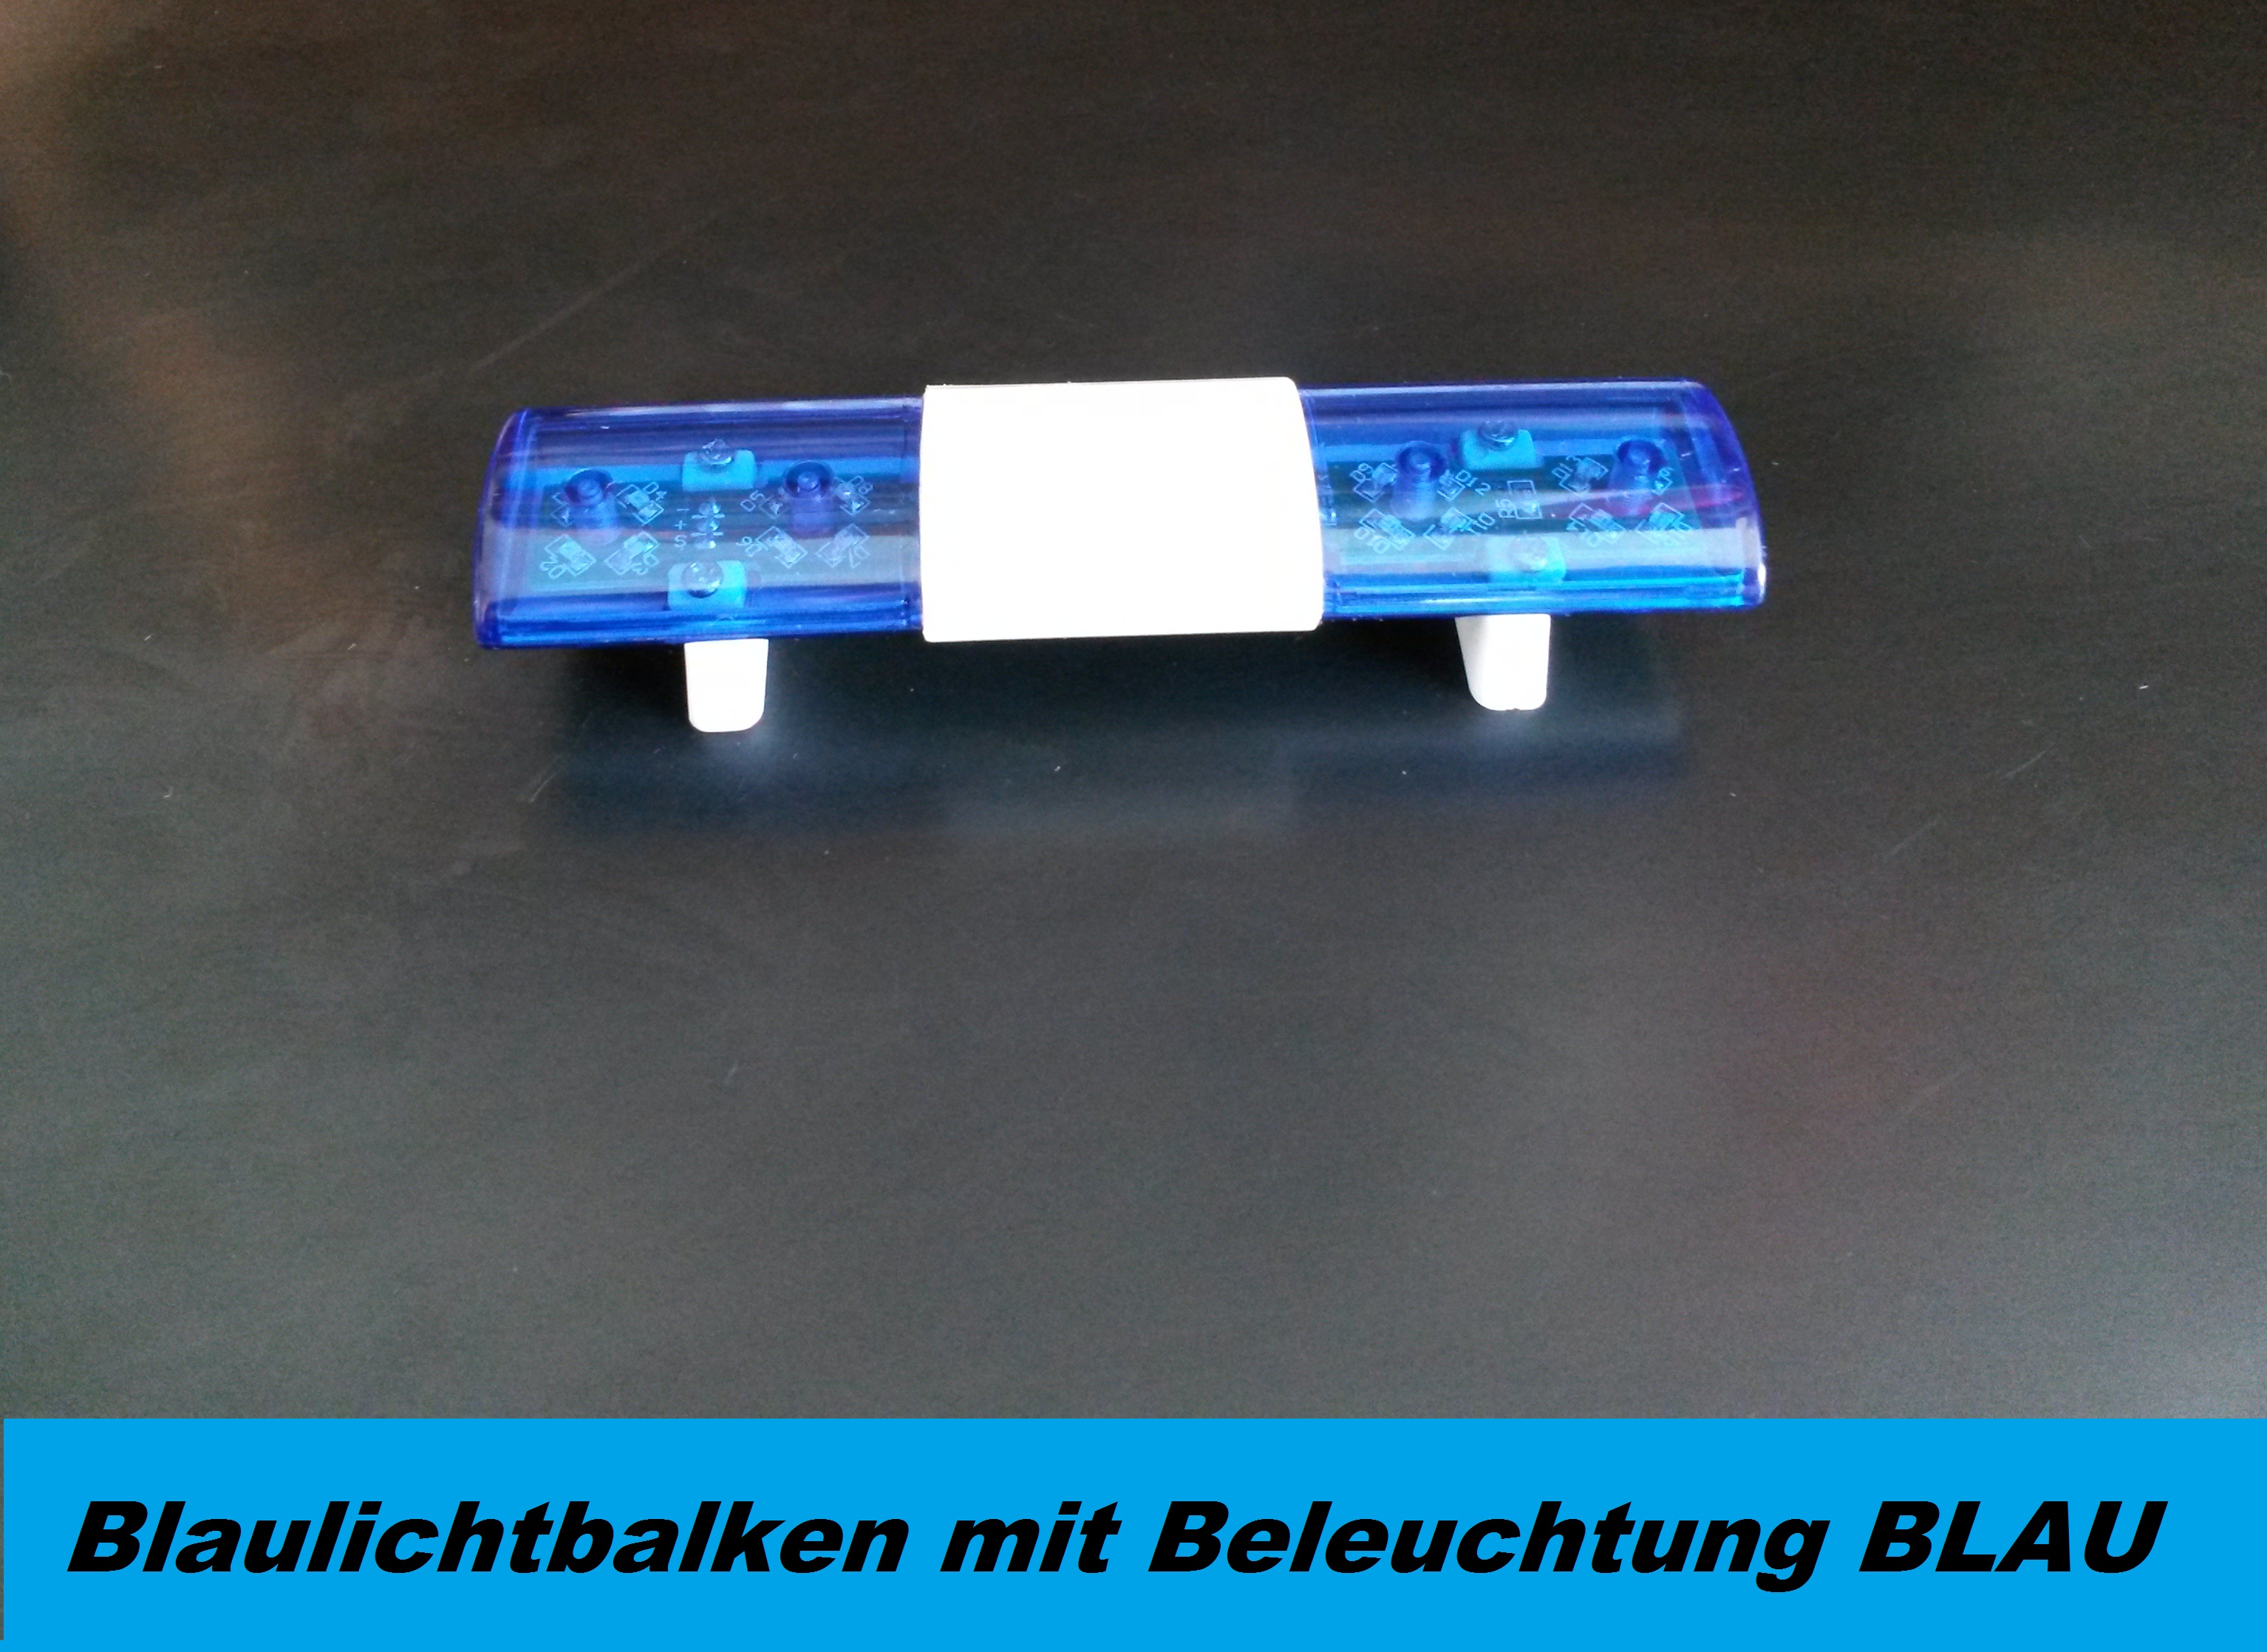  Beleuchtung RC Car - LEDs & Zubehör Modellbau Sounds  Blitzlicht - Light bar / light bar / blue light bar / light bar in BLUE  with flash illumination